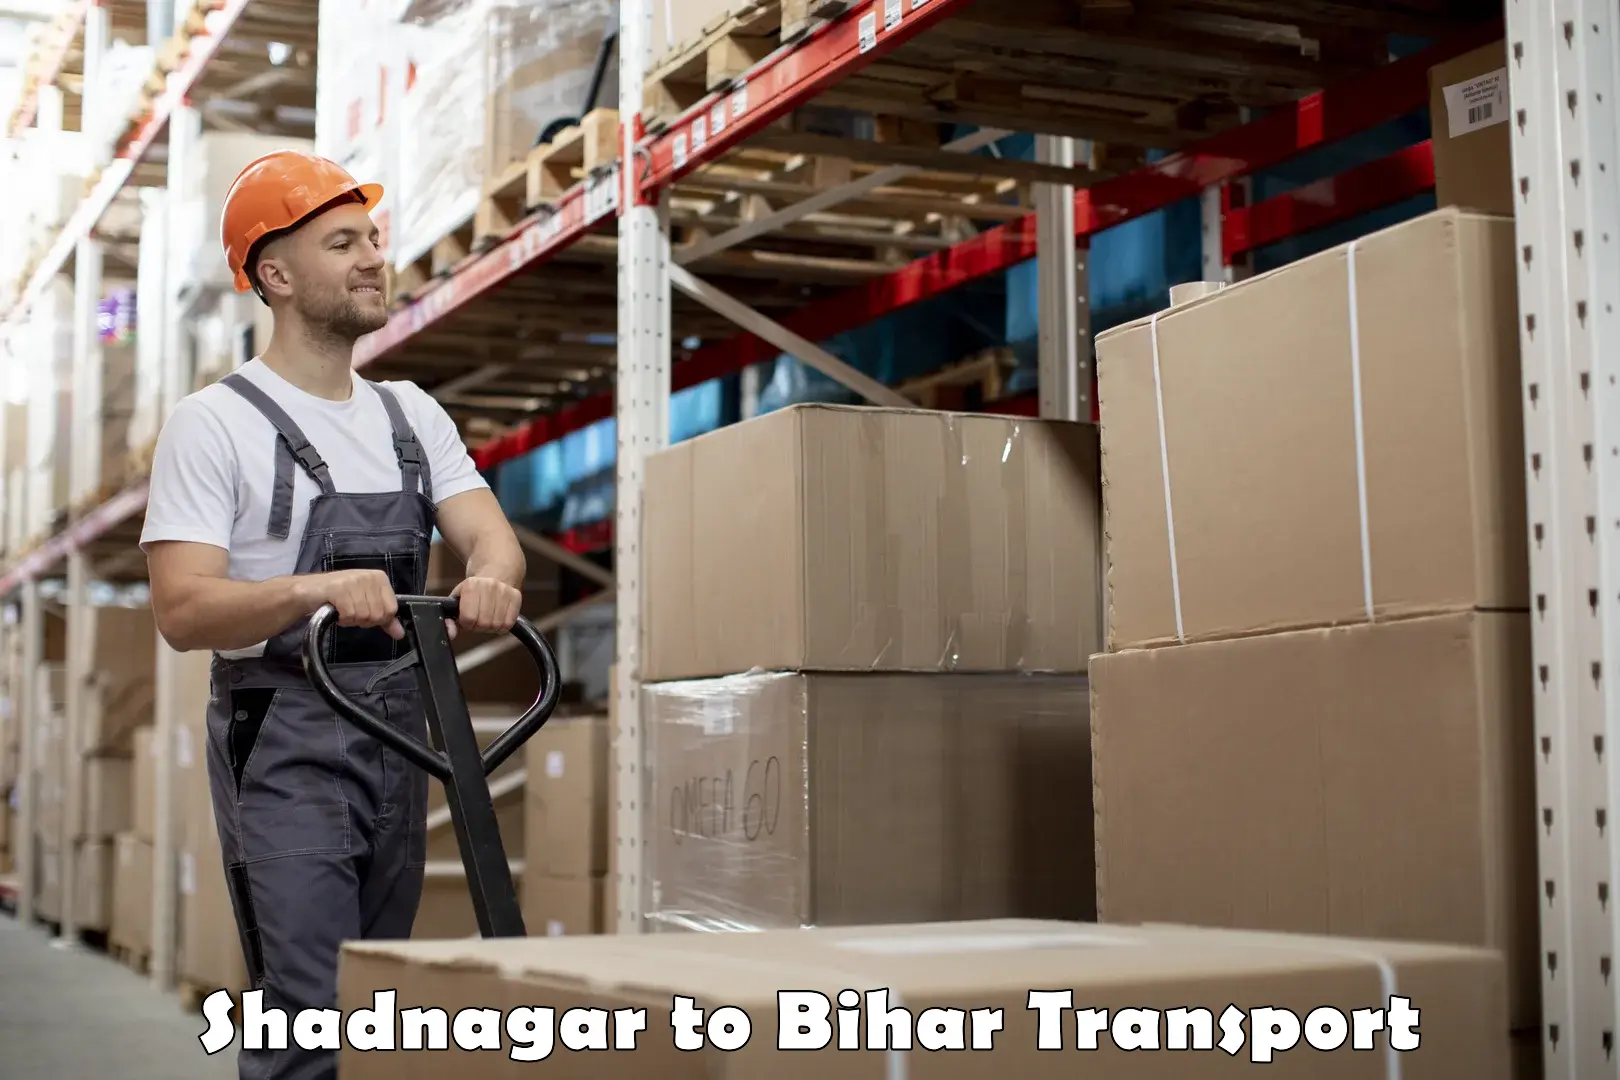 Logistics transportation services Shadnagar to Bihar